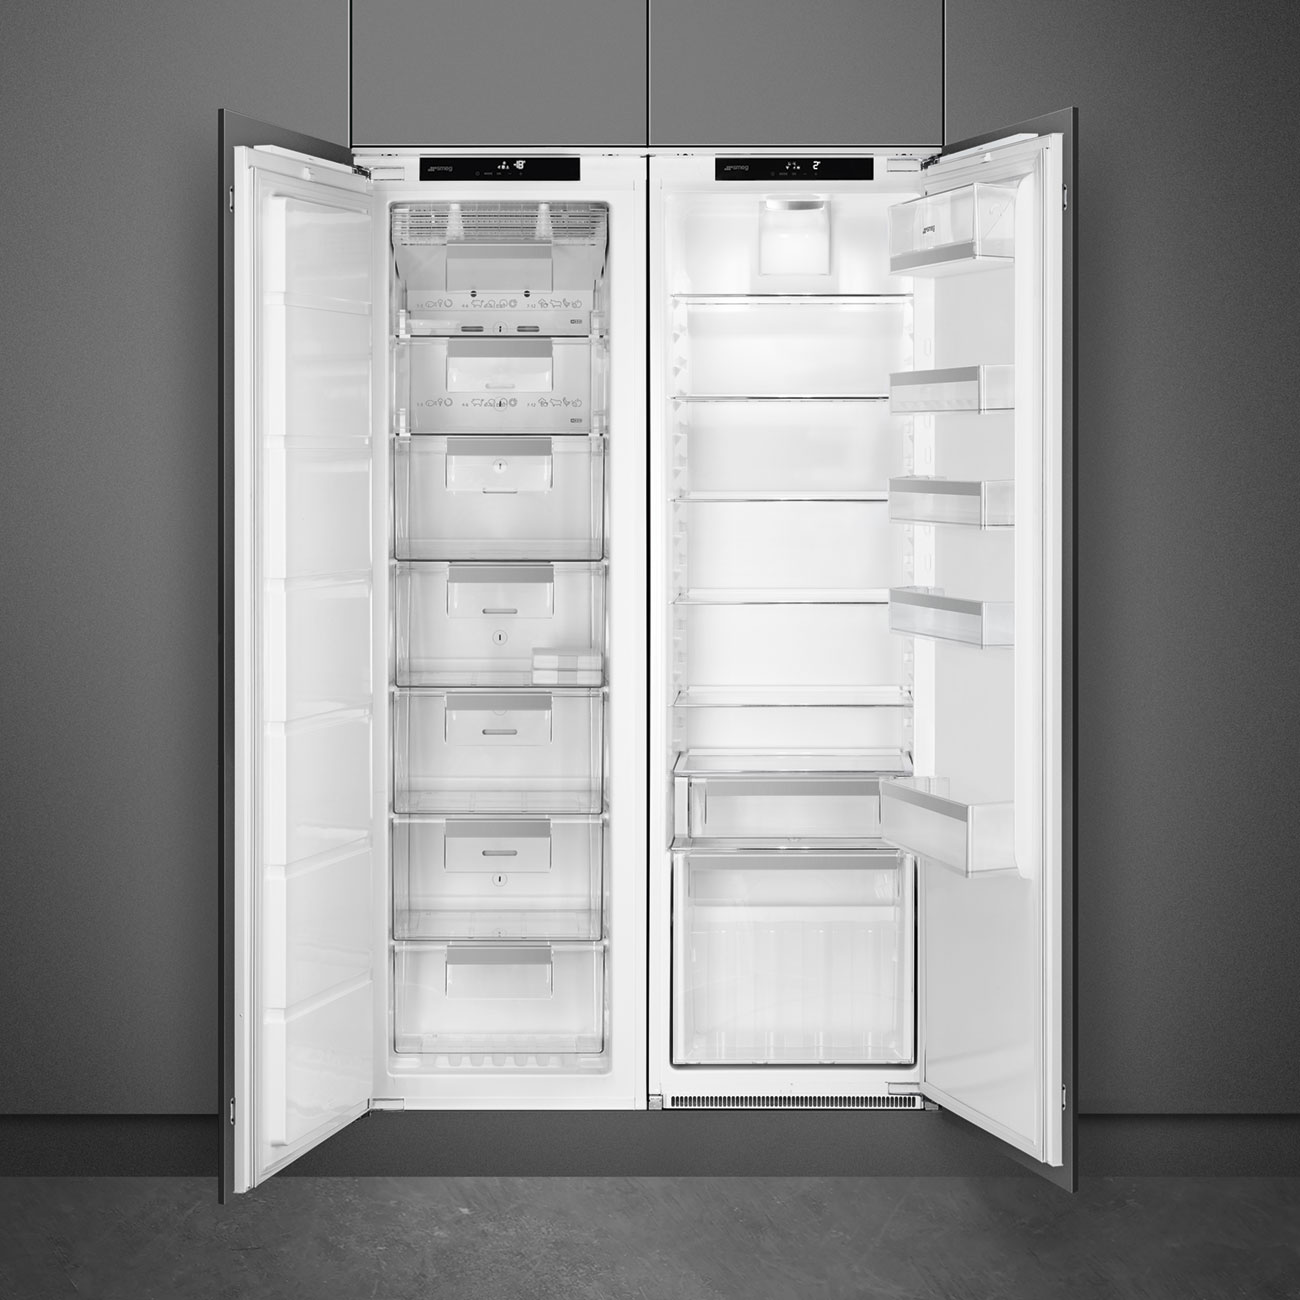 Single door Built-in freezer- Smeg_2